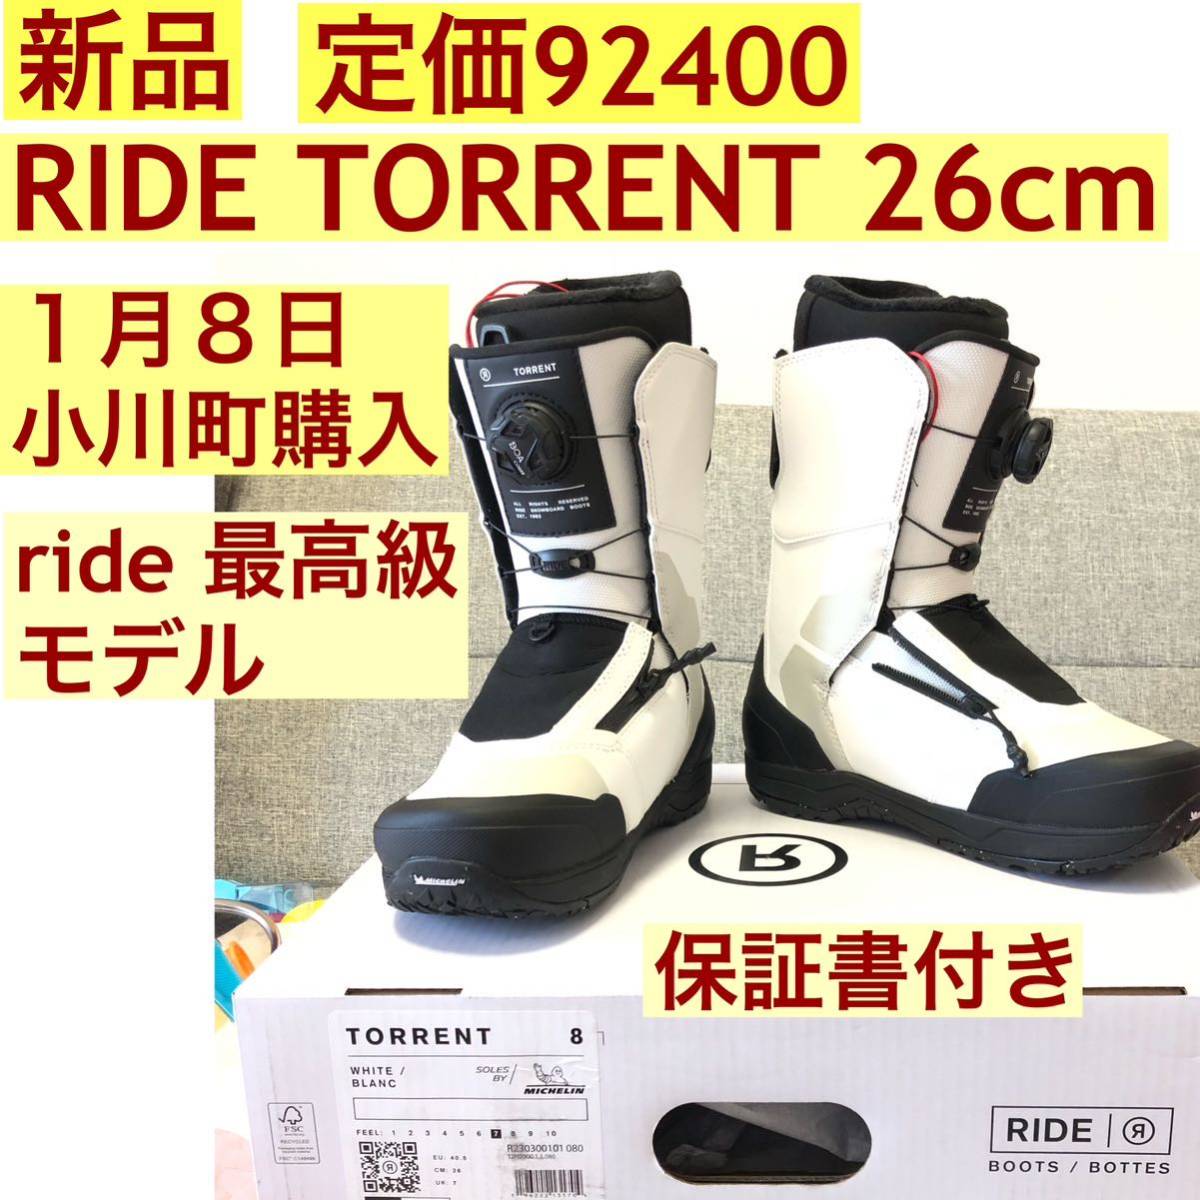 新品 ride スノーボードブーツ 23-34 新モデル TORRENT 26 cm the 92 lasso pro より上級_画像1